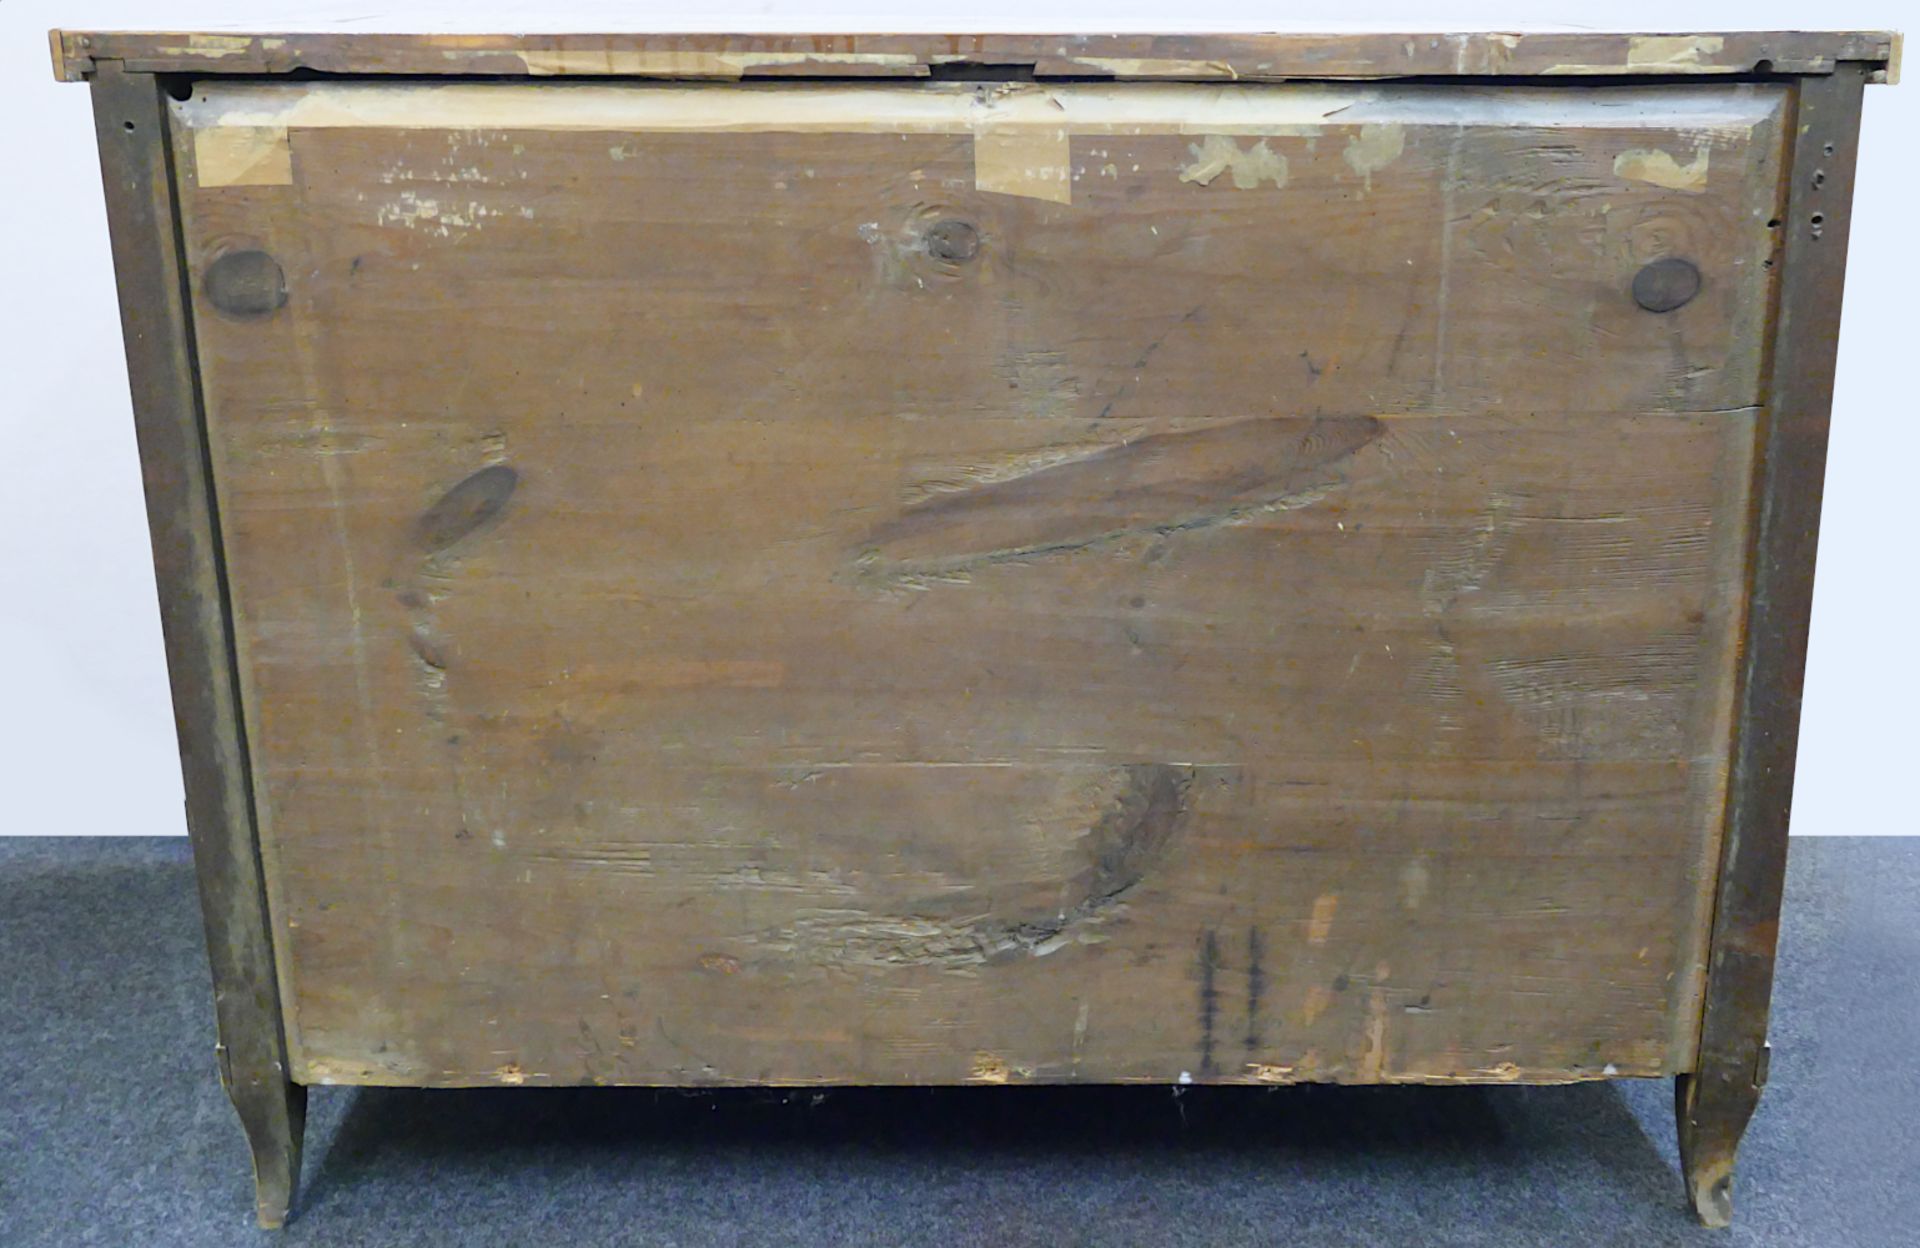 1 Kommode wohl um 1810/1820 Holz furniert wohl Kirsche in Flechtoptik, Metallbeschläge, ca. 90,5x119 - Image 7 of 7